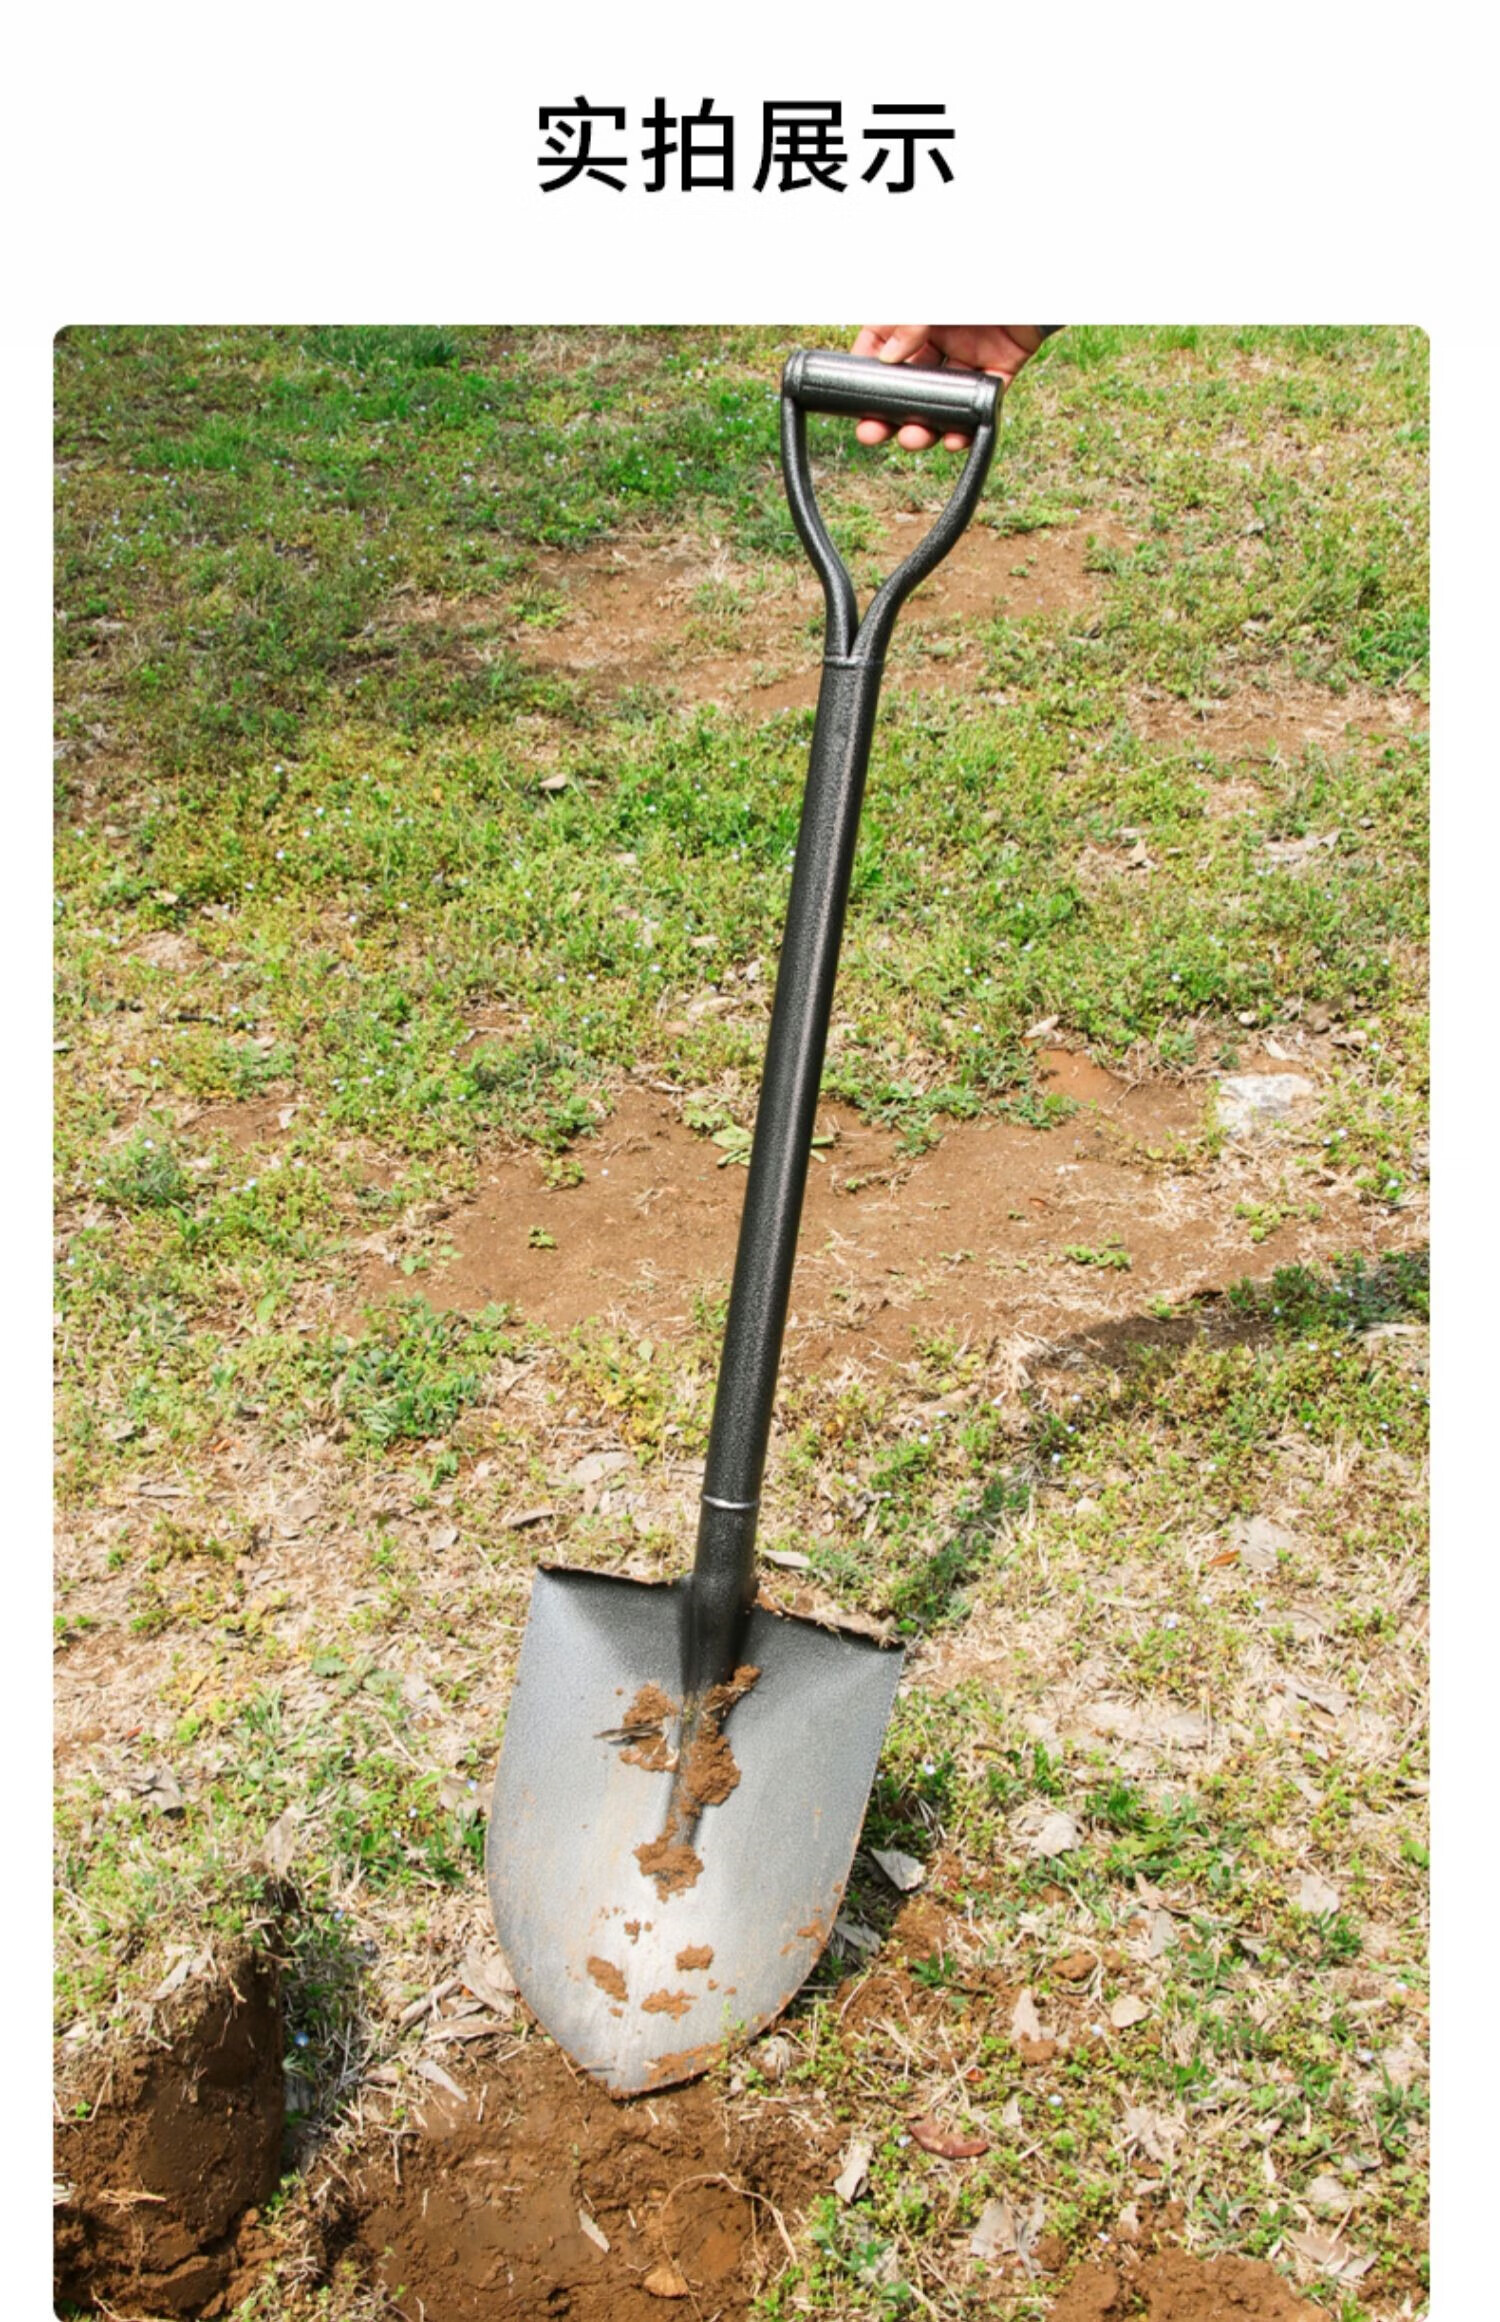 铁锹农用小铁铲子户外挖土推雪铲园艺种花工具家用铁锨种菜神器 尖头